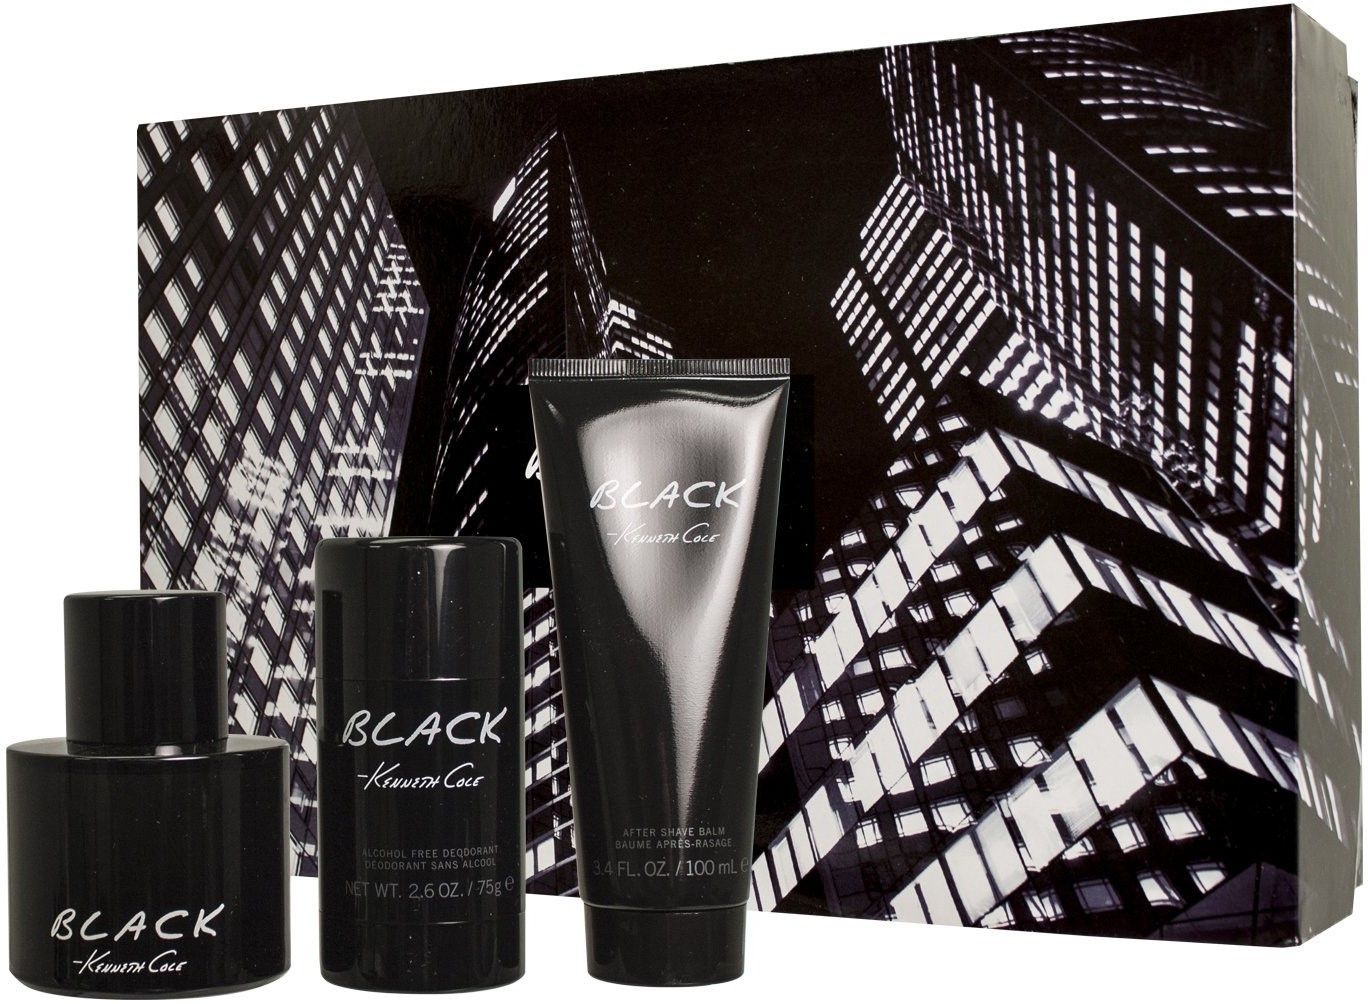 Kenneth Cole Black Eau De Toilette 3 Piece Gift Set For Men at Ratans Online Shop - Perfumes Wholesale and Retailer Fragrance 2